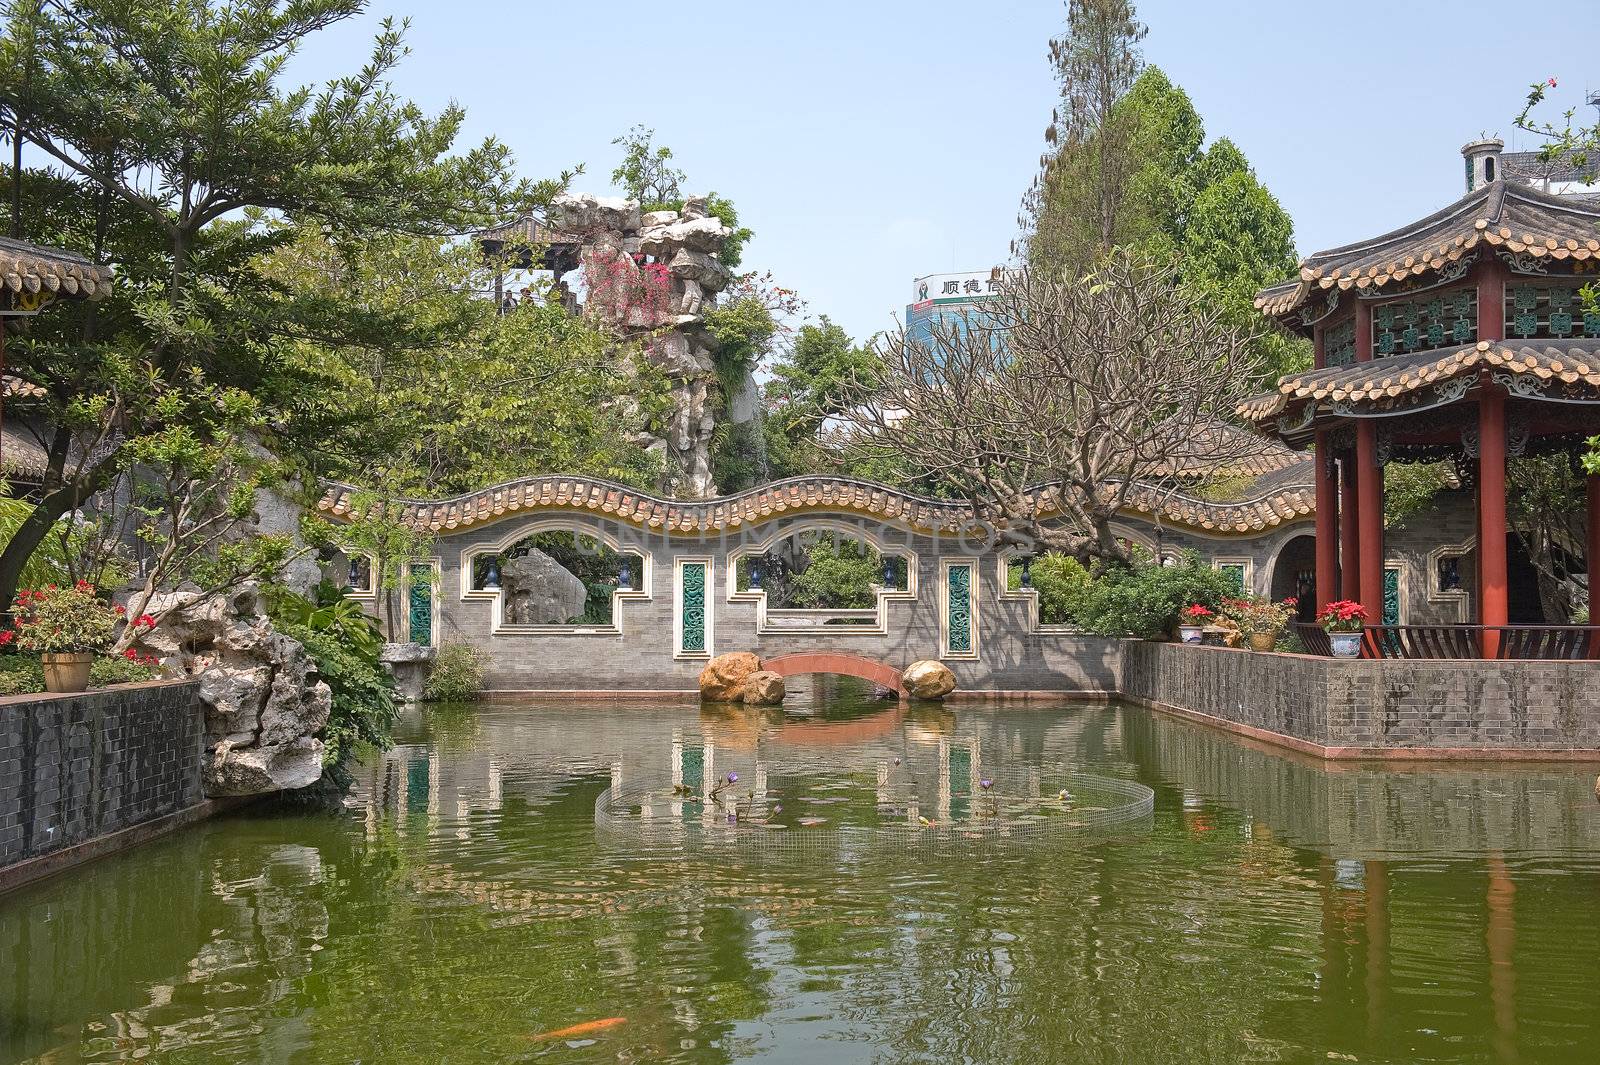 Bridge over water, Qinghui garden in Shunde, Foshan, Guangdong China